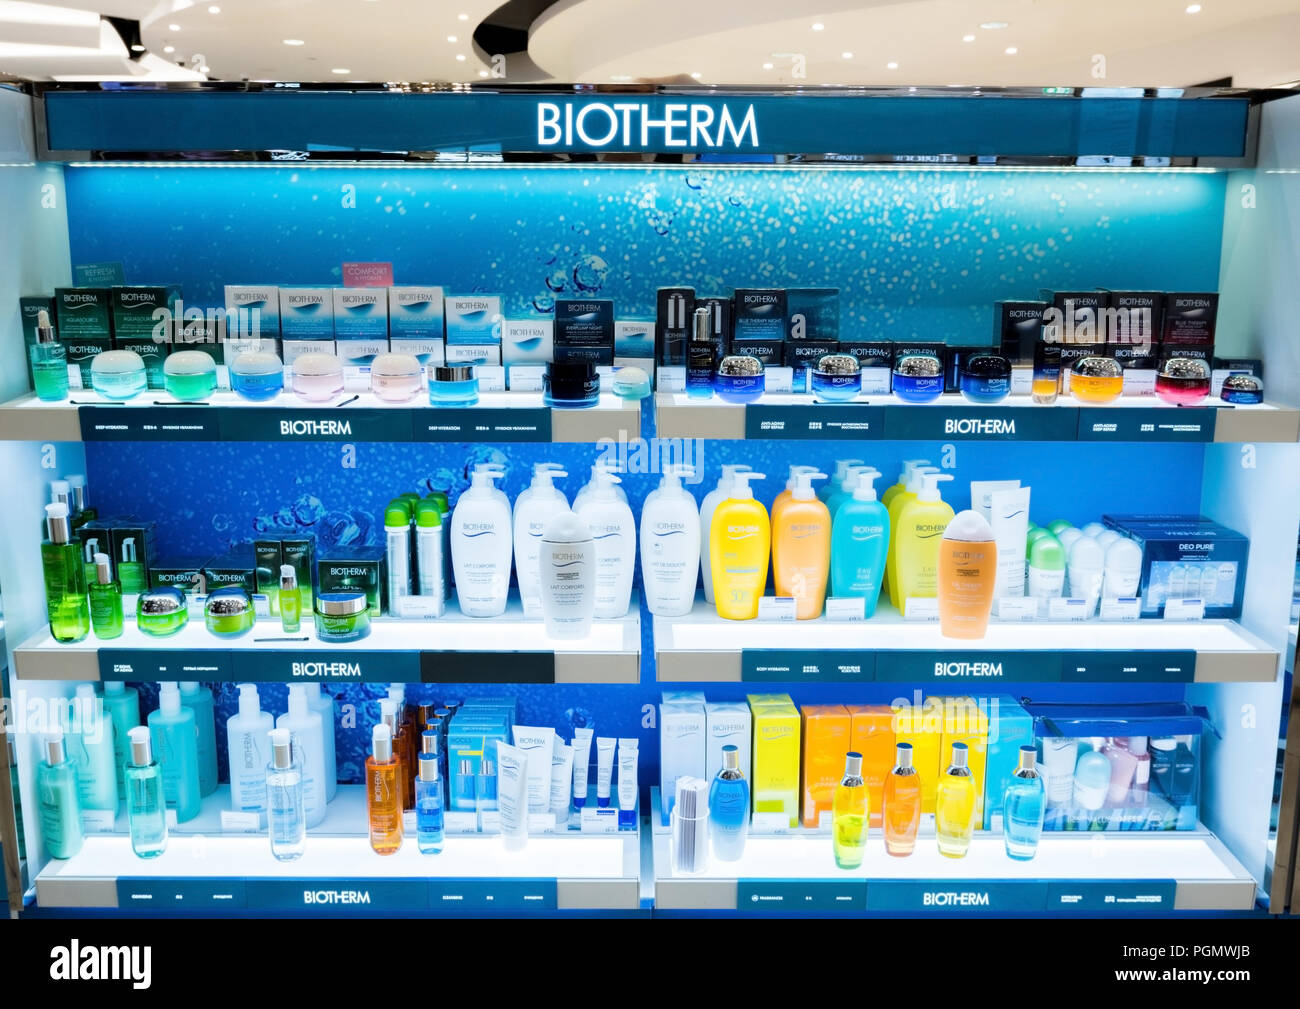 Londres, Royaume-Uni - 31 août 2018 : parfum et cosmétiques Biotherm  collection dans la boutique hors taxes aéroport Photo Stock - Alamy